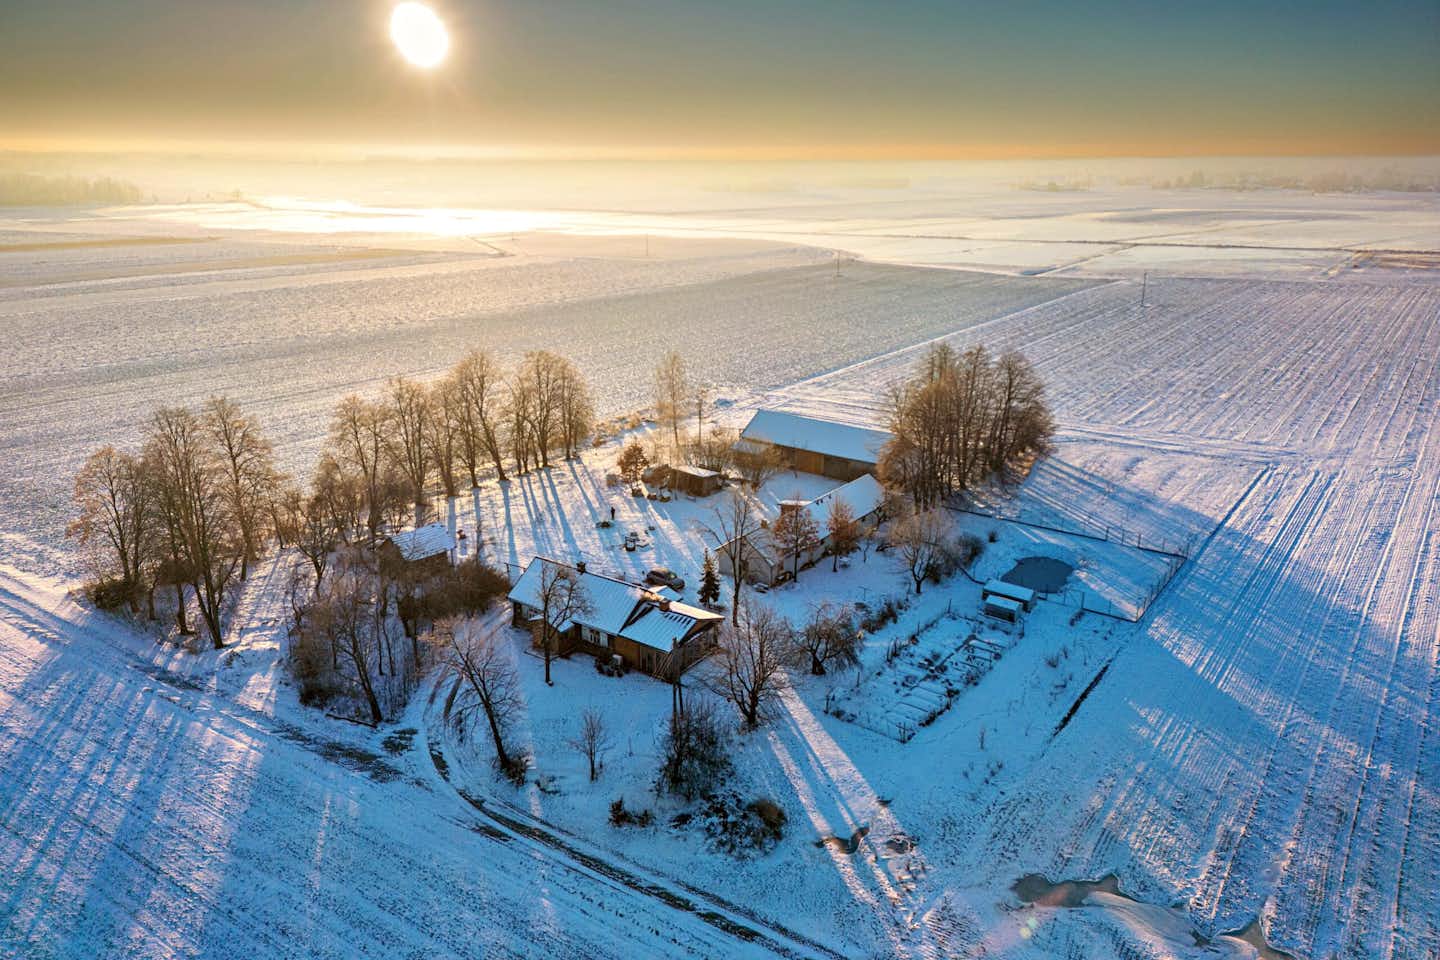 Kampinski Campground and Accommodation - Luftaufnahme des verschneiten Campingplatzes im Winter